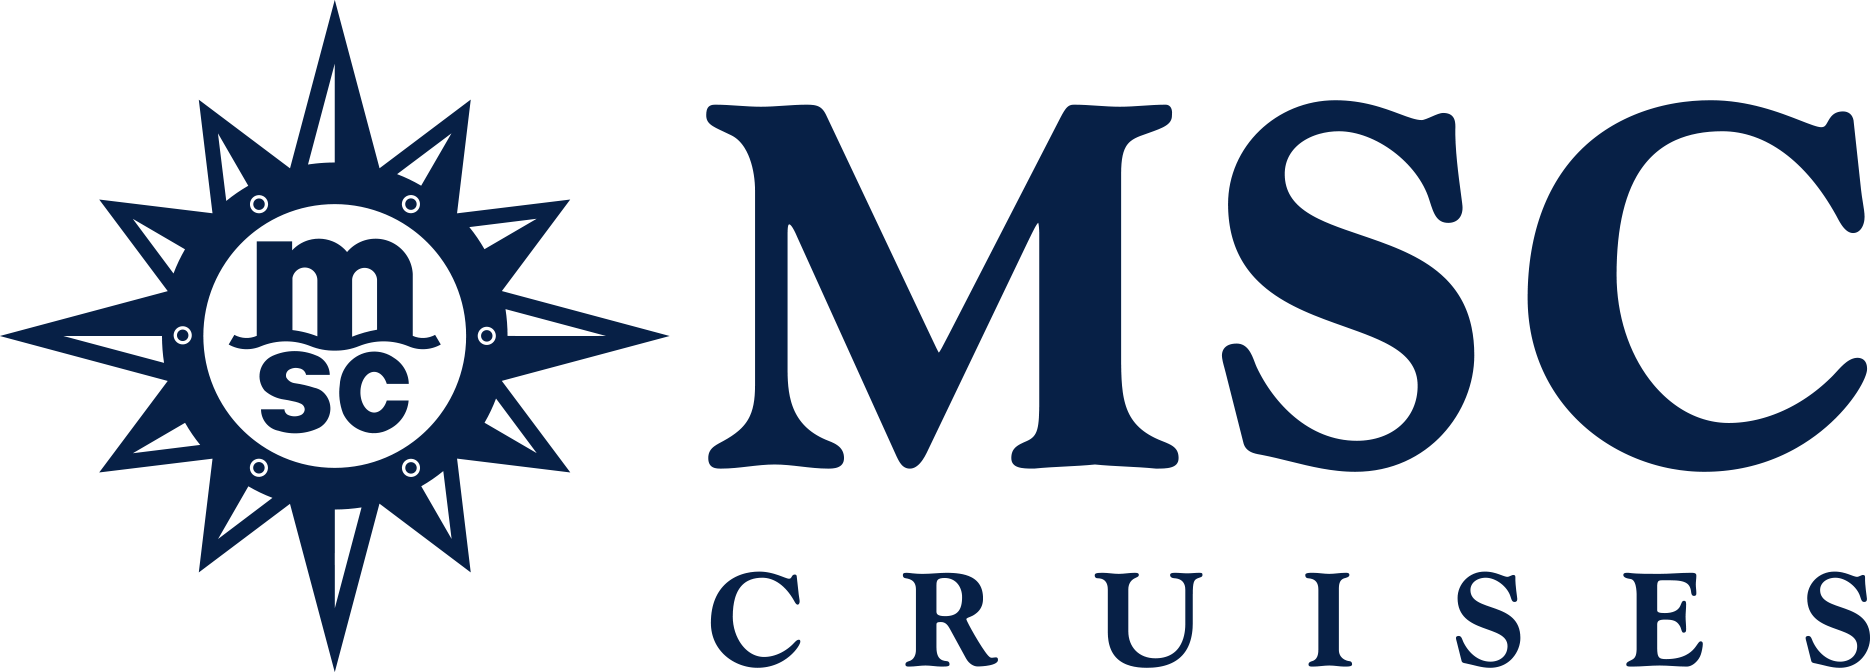 MSC Splendida Reederei Logo